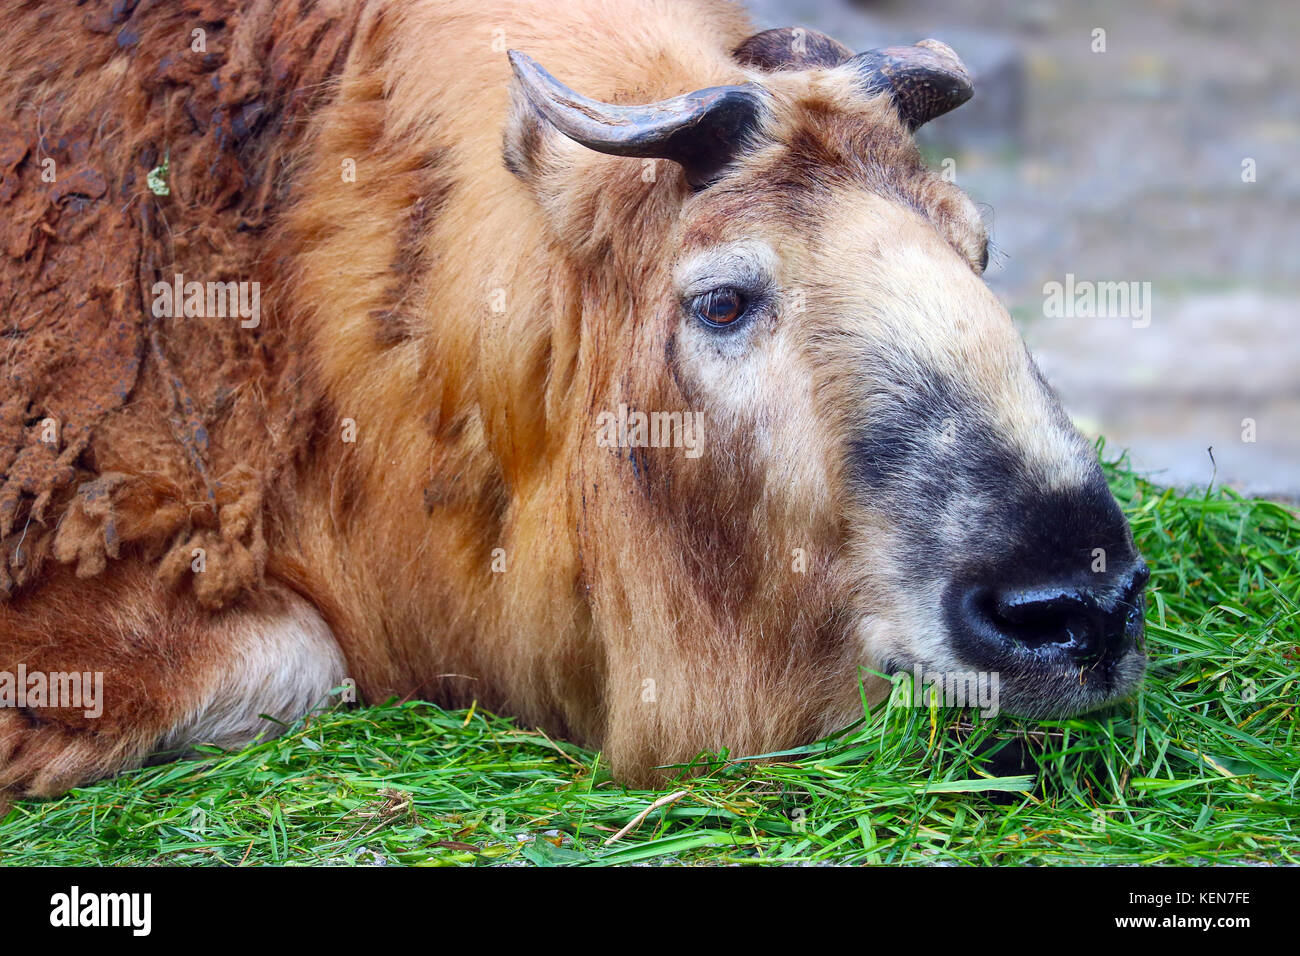 Sichuan takin auf dem Boden liegen und Fütterung essen Gras Stockfoto